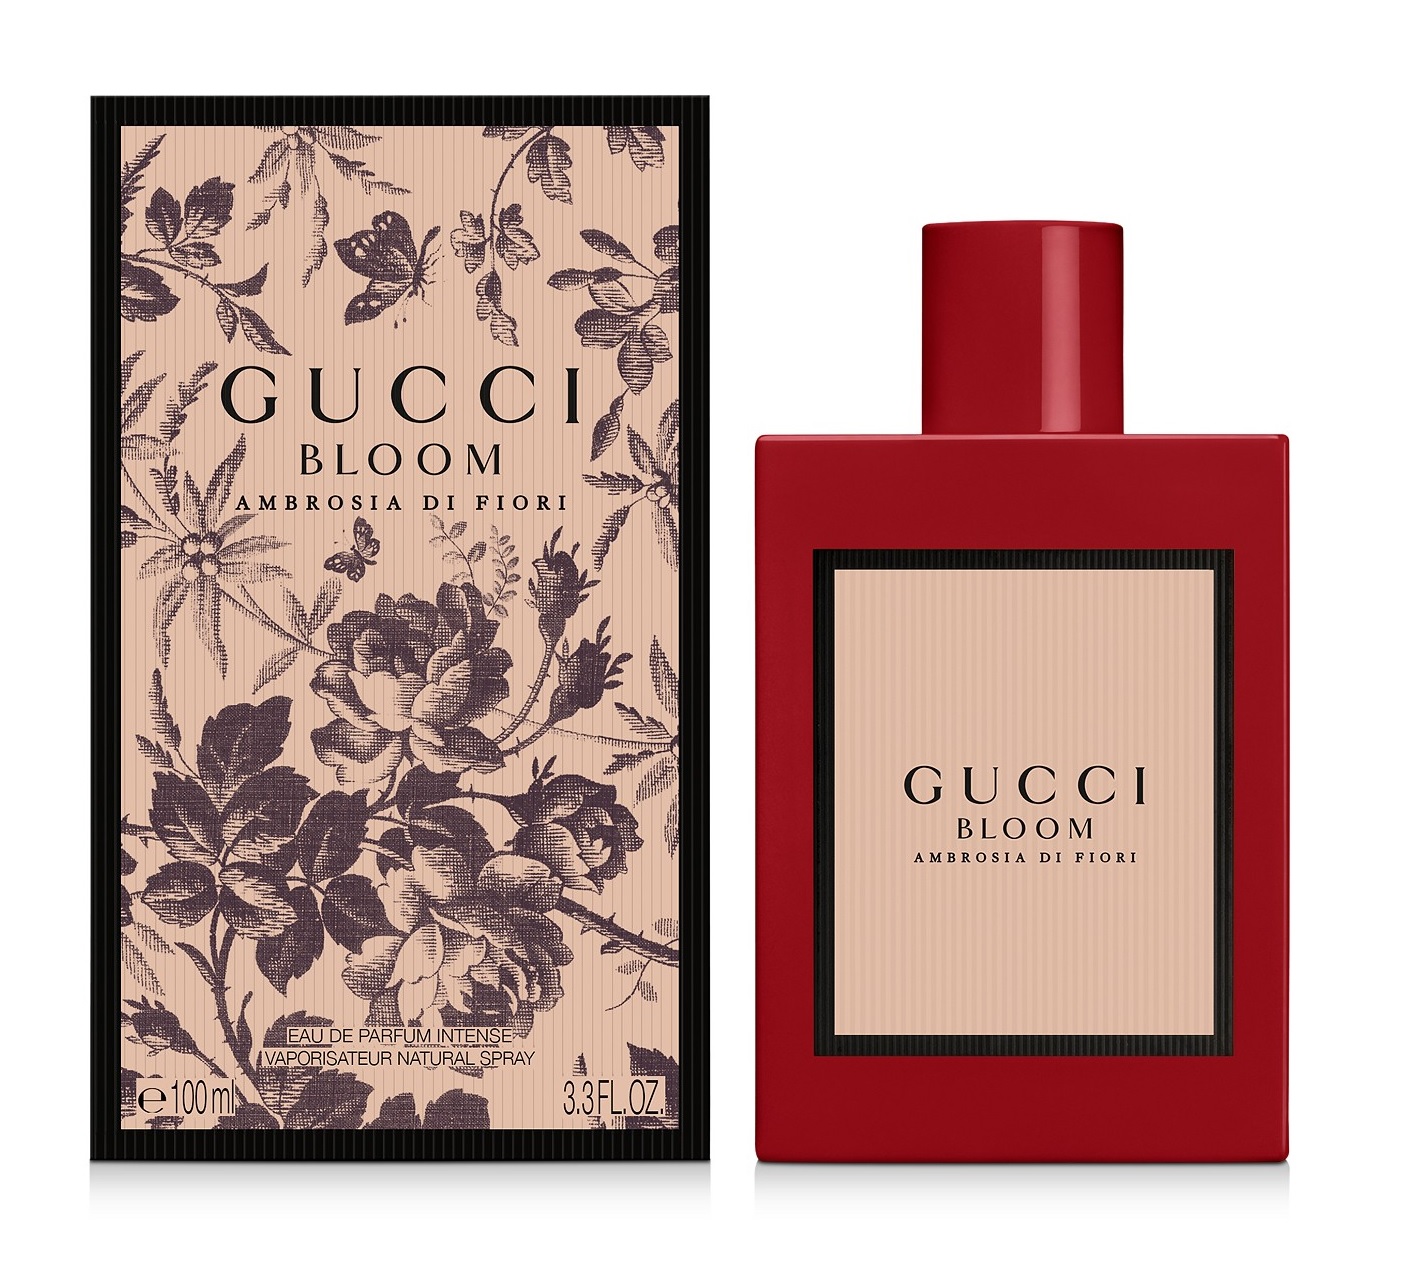 Gucci Bloom Ambrosia di Fiori: Revue 